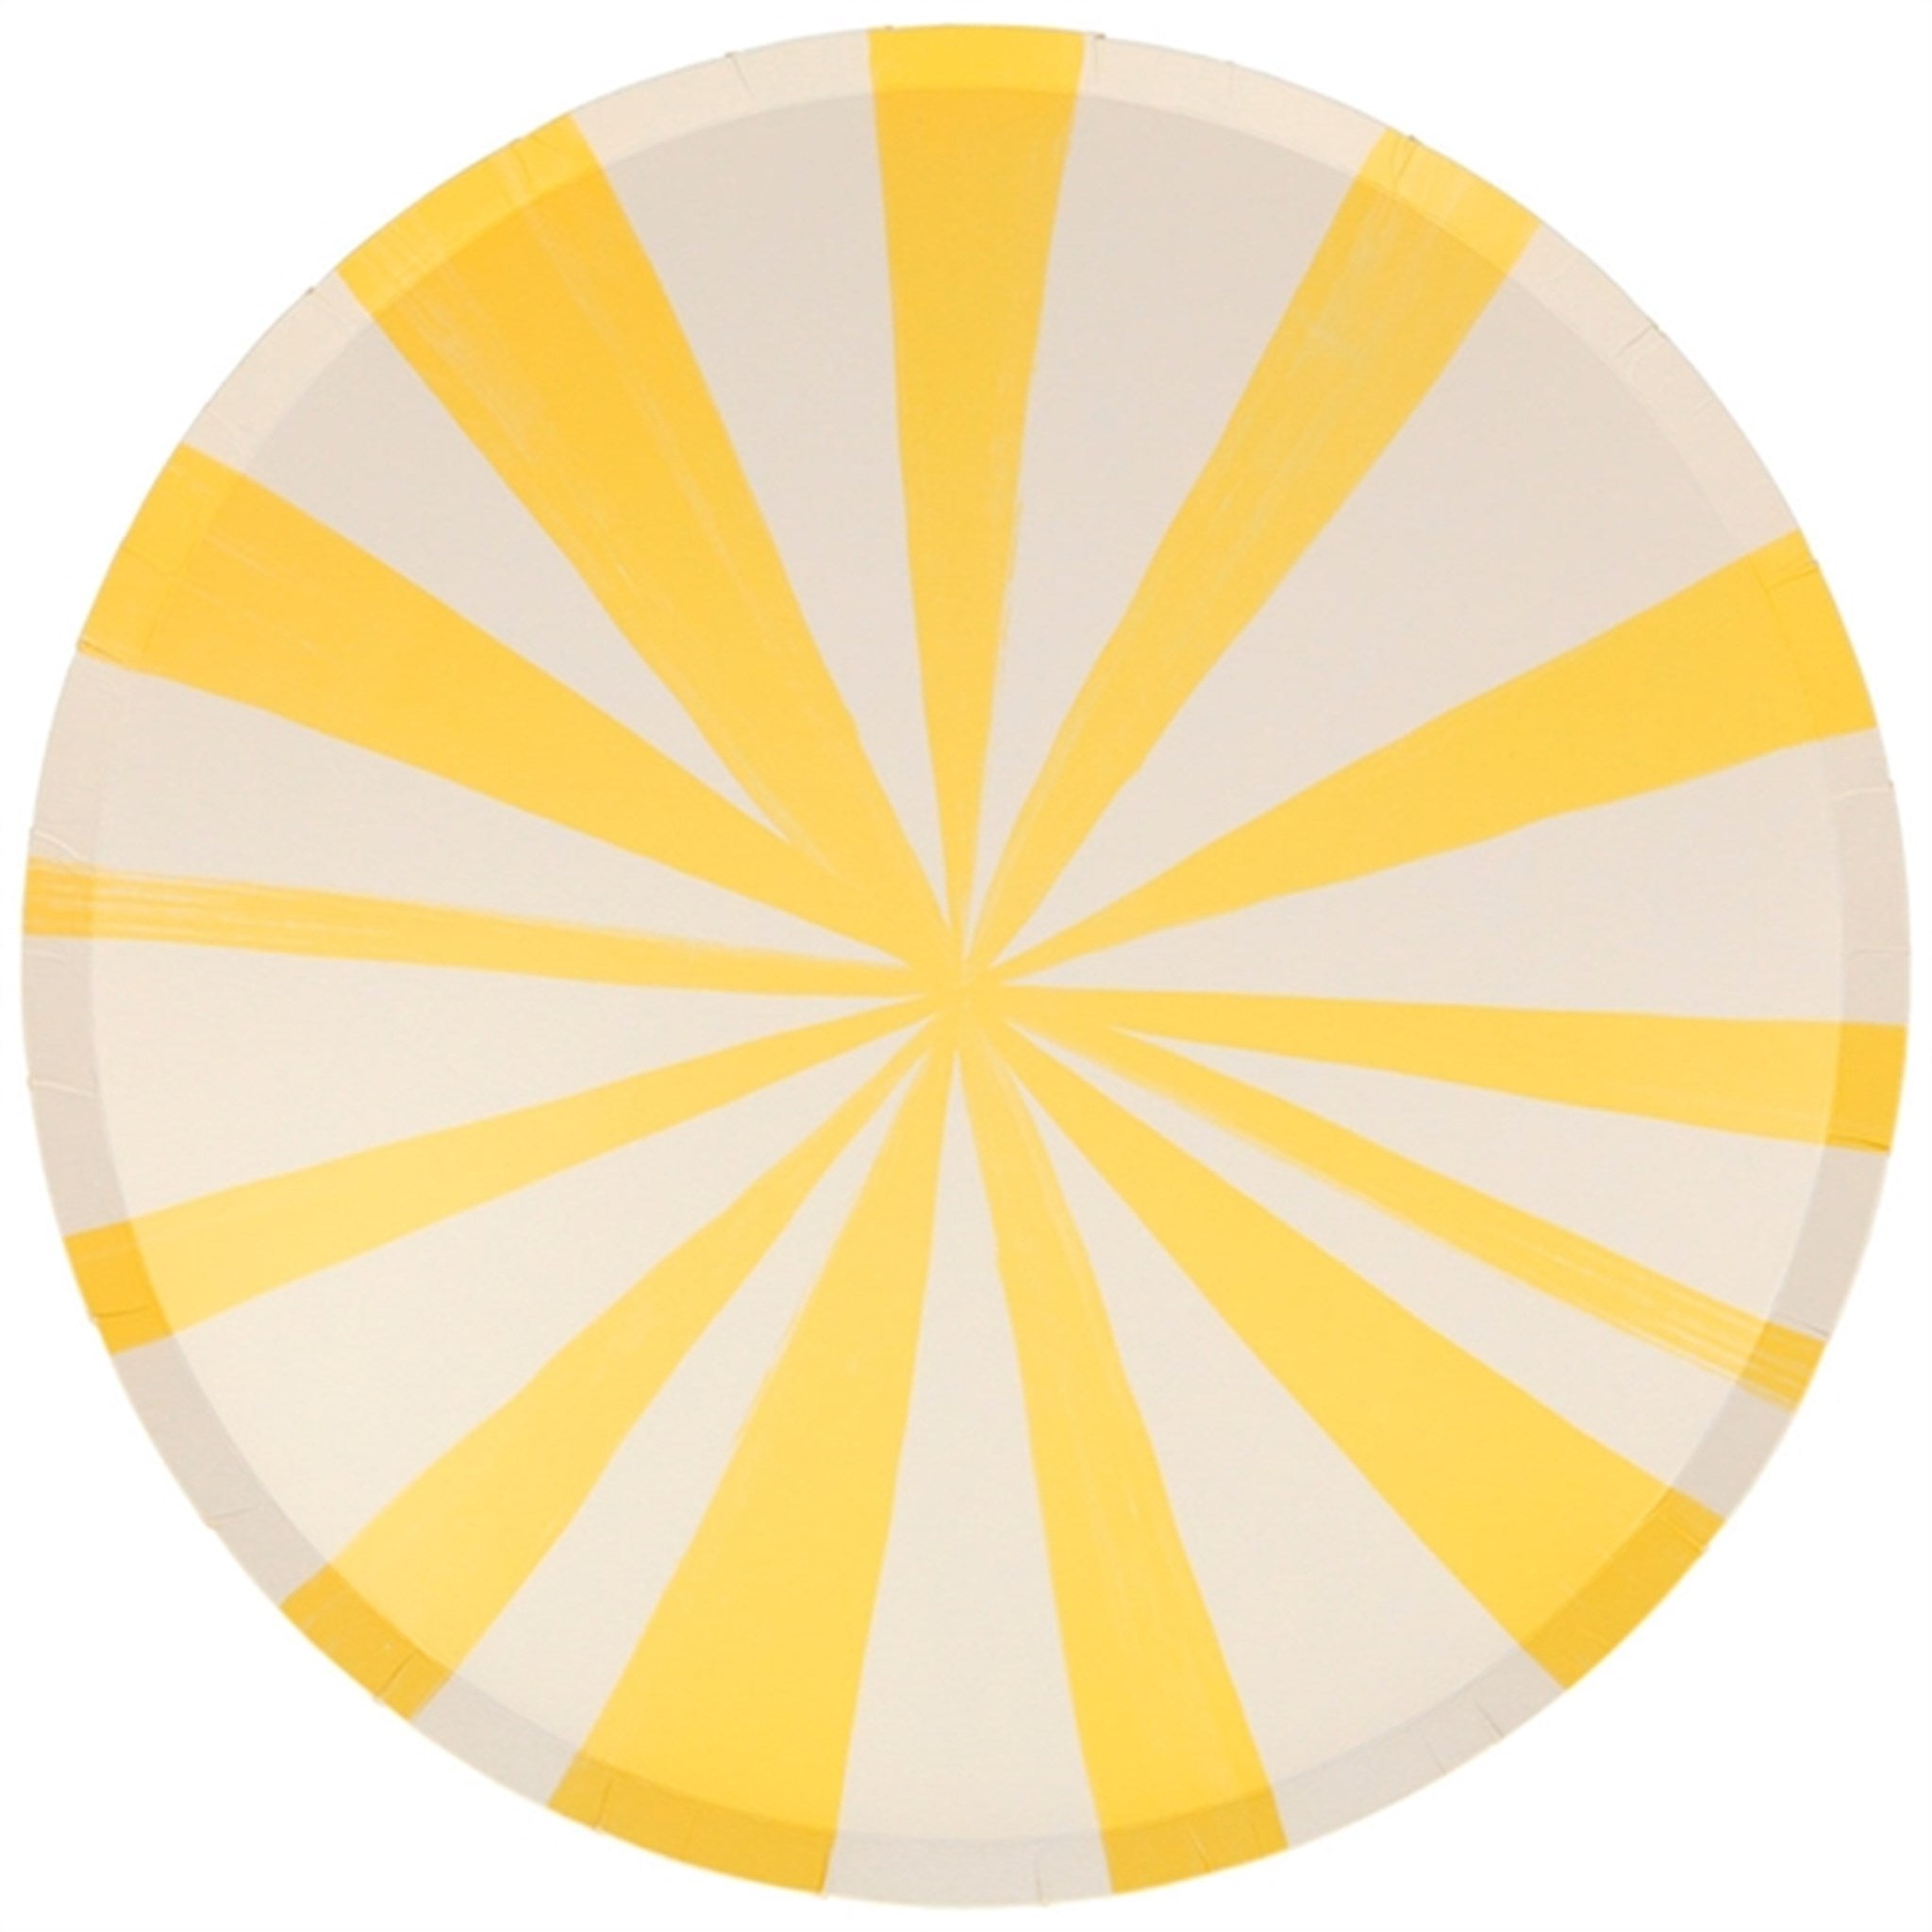 Meri Meri Stripe Yellow Plates Large